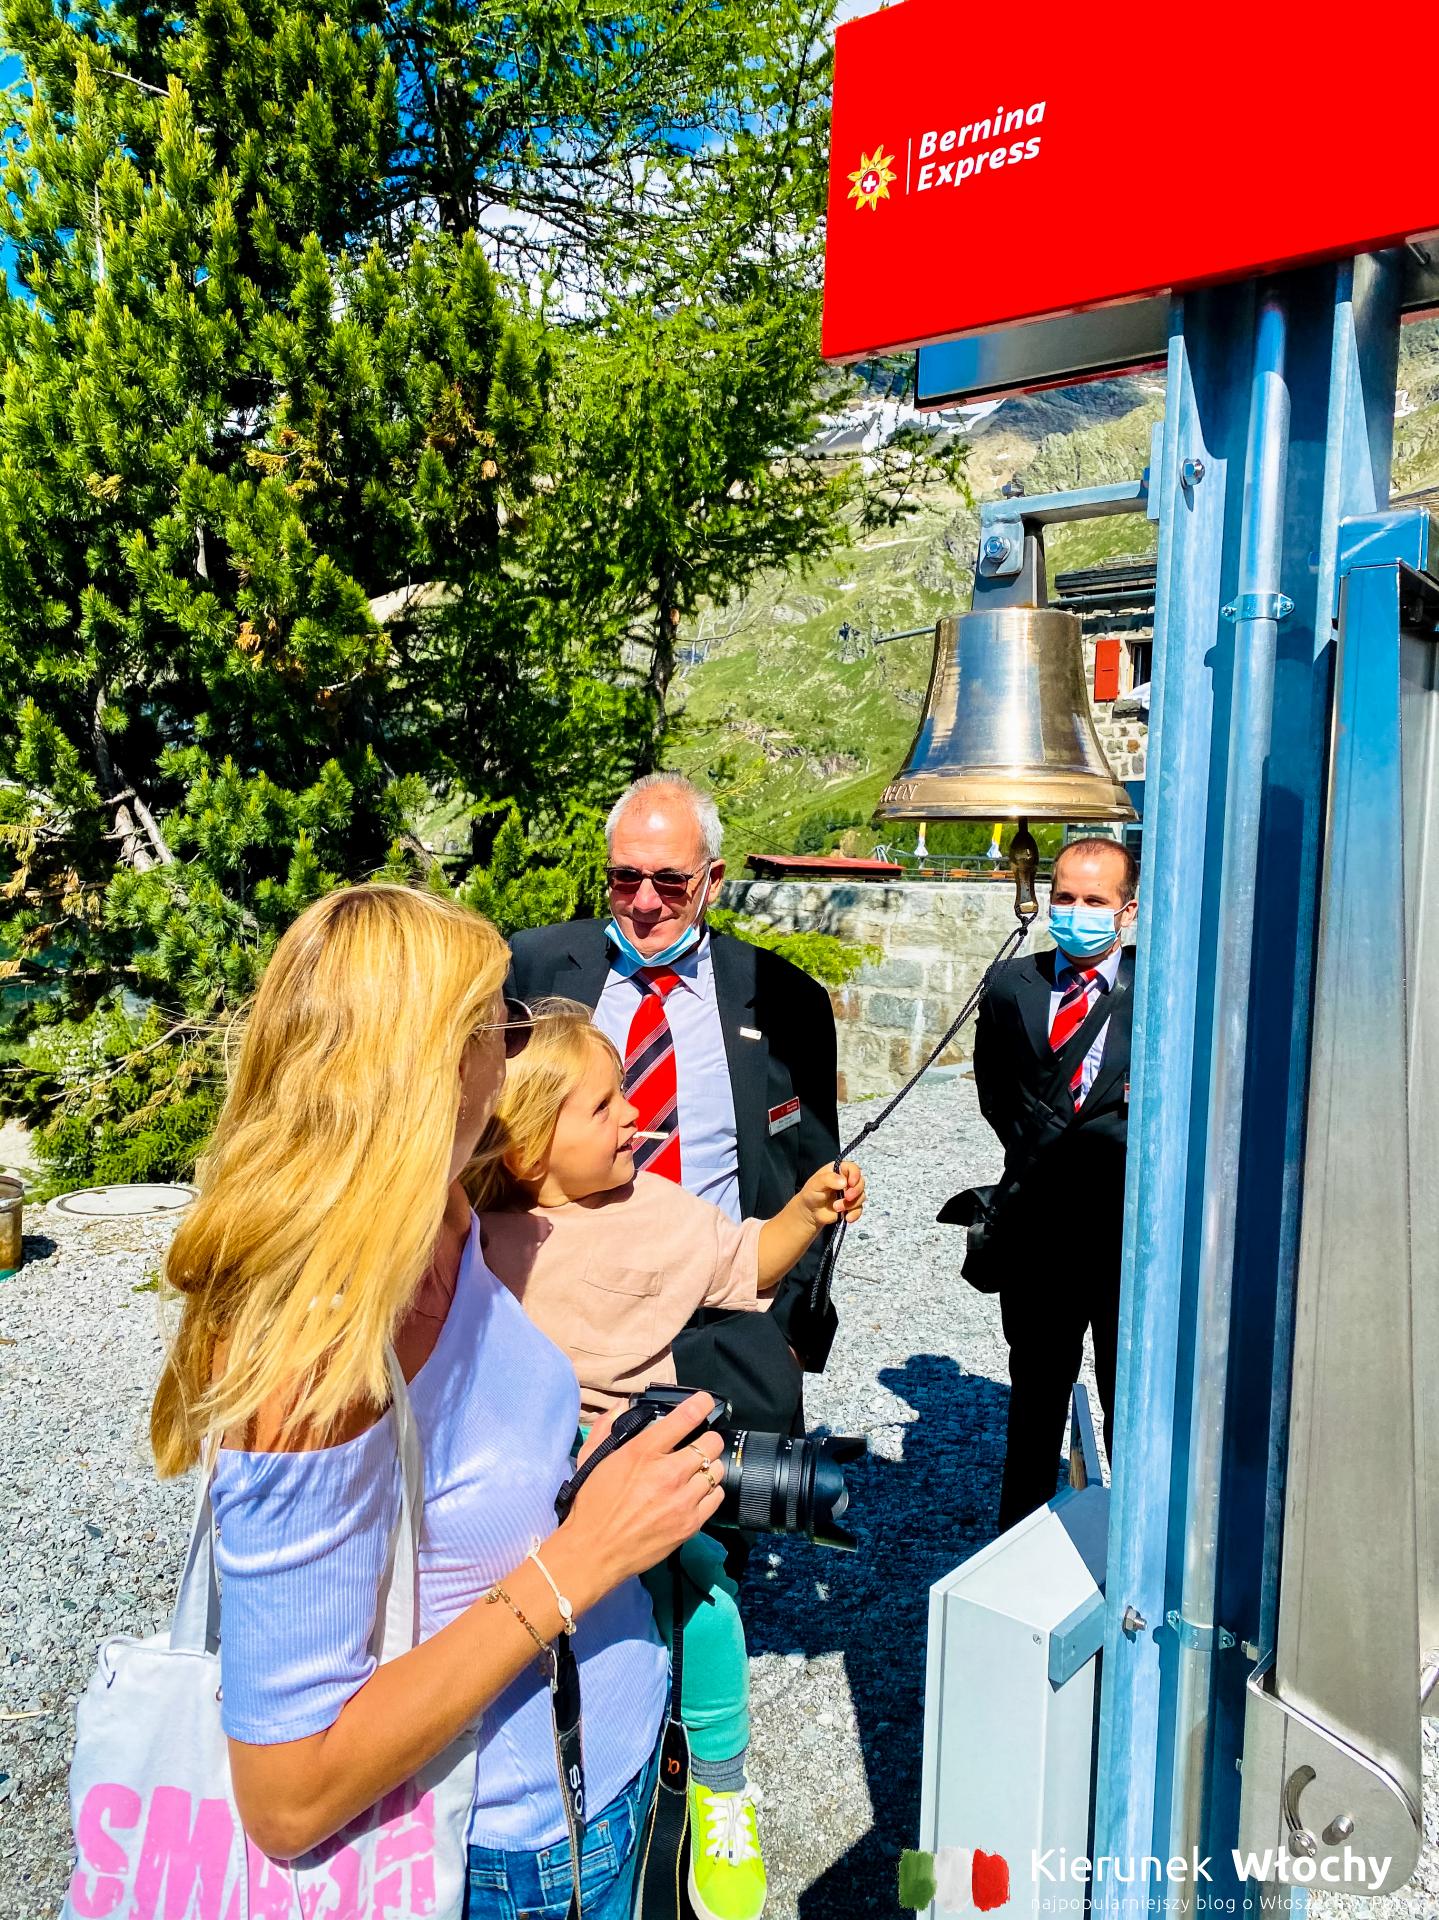 nasz dwuletni Milan daje sygnał do odjazdu Bernina Express na stacji kolejowej Alp Grüm w Szwajcarii na wysokości 2091 m n.p.m., w drodze do Włoch (fot. Łukasz Ropczyński, kierunekwlochy.pl)